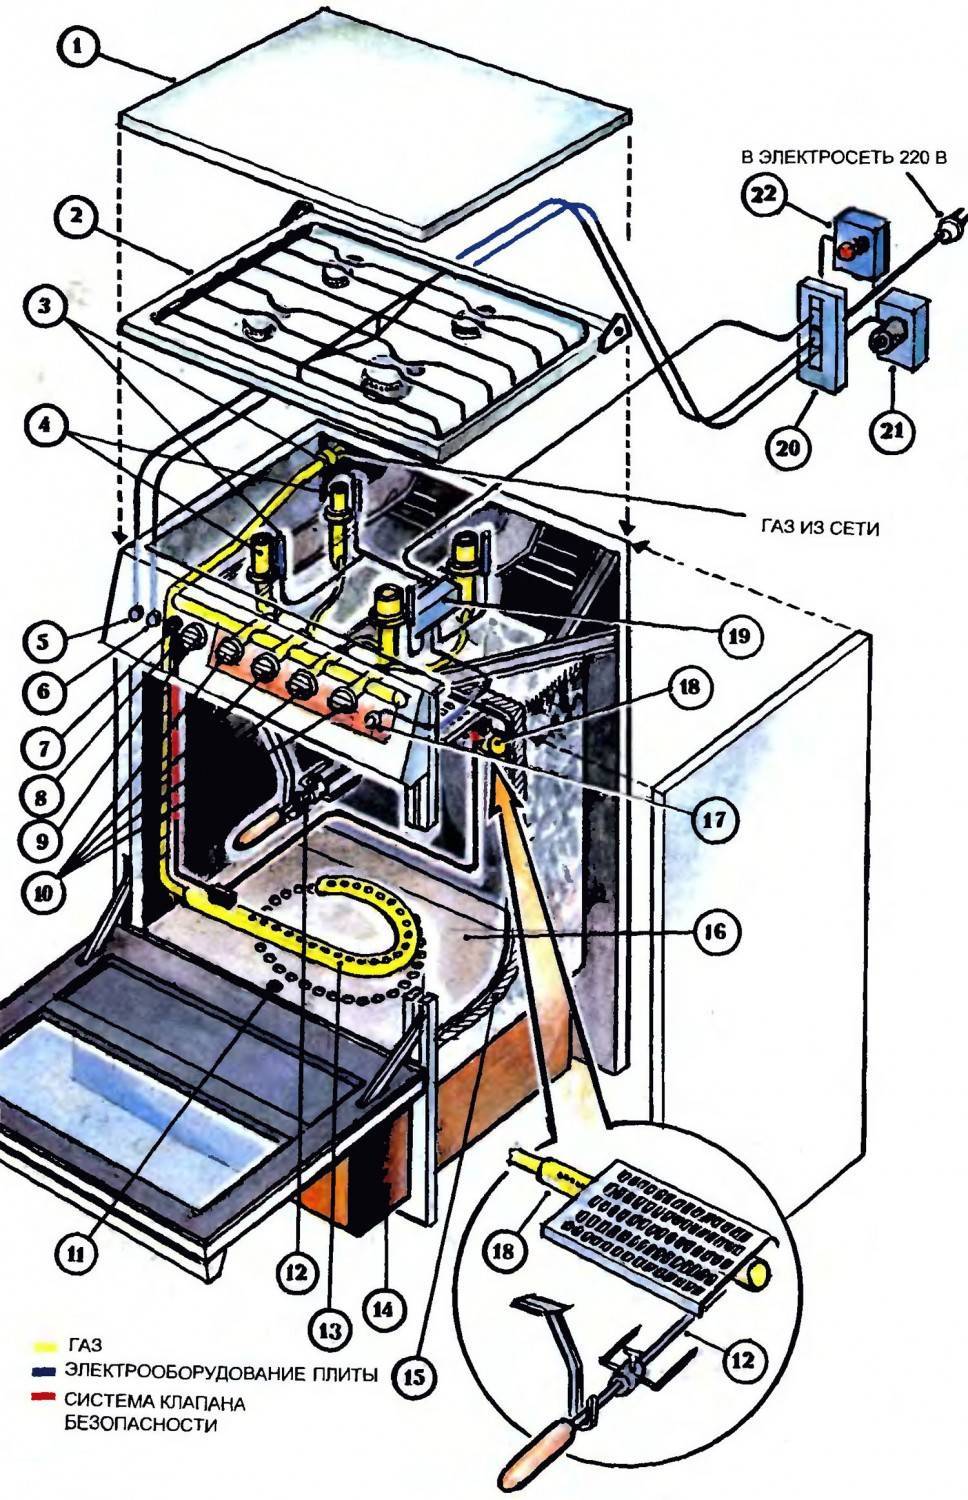 Схема газовой плиты - основные компоненты